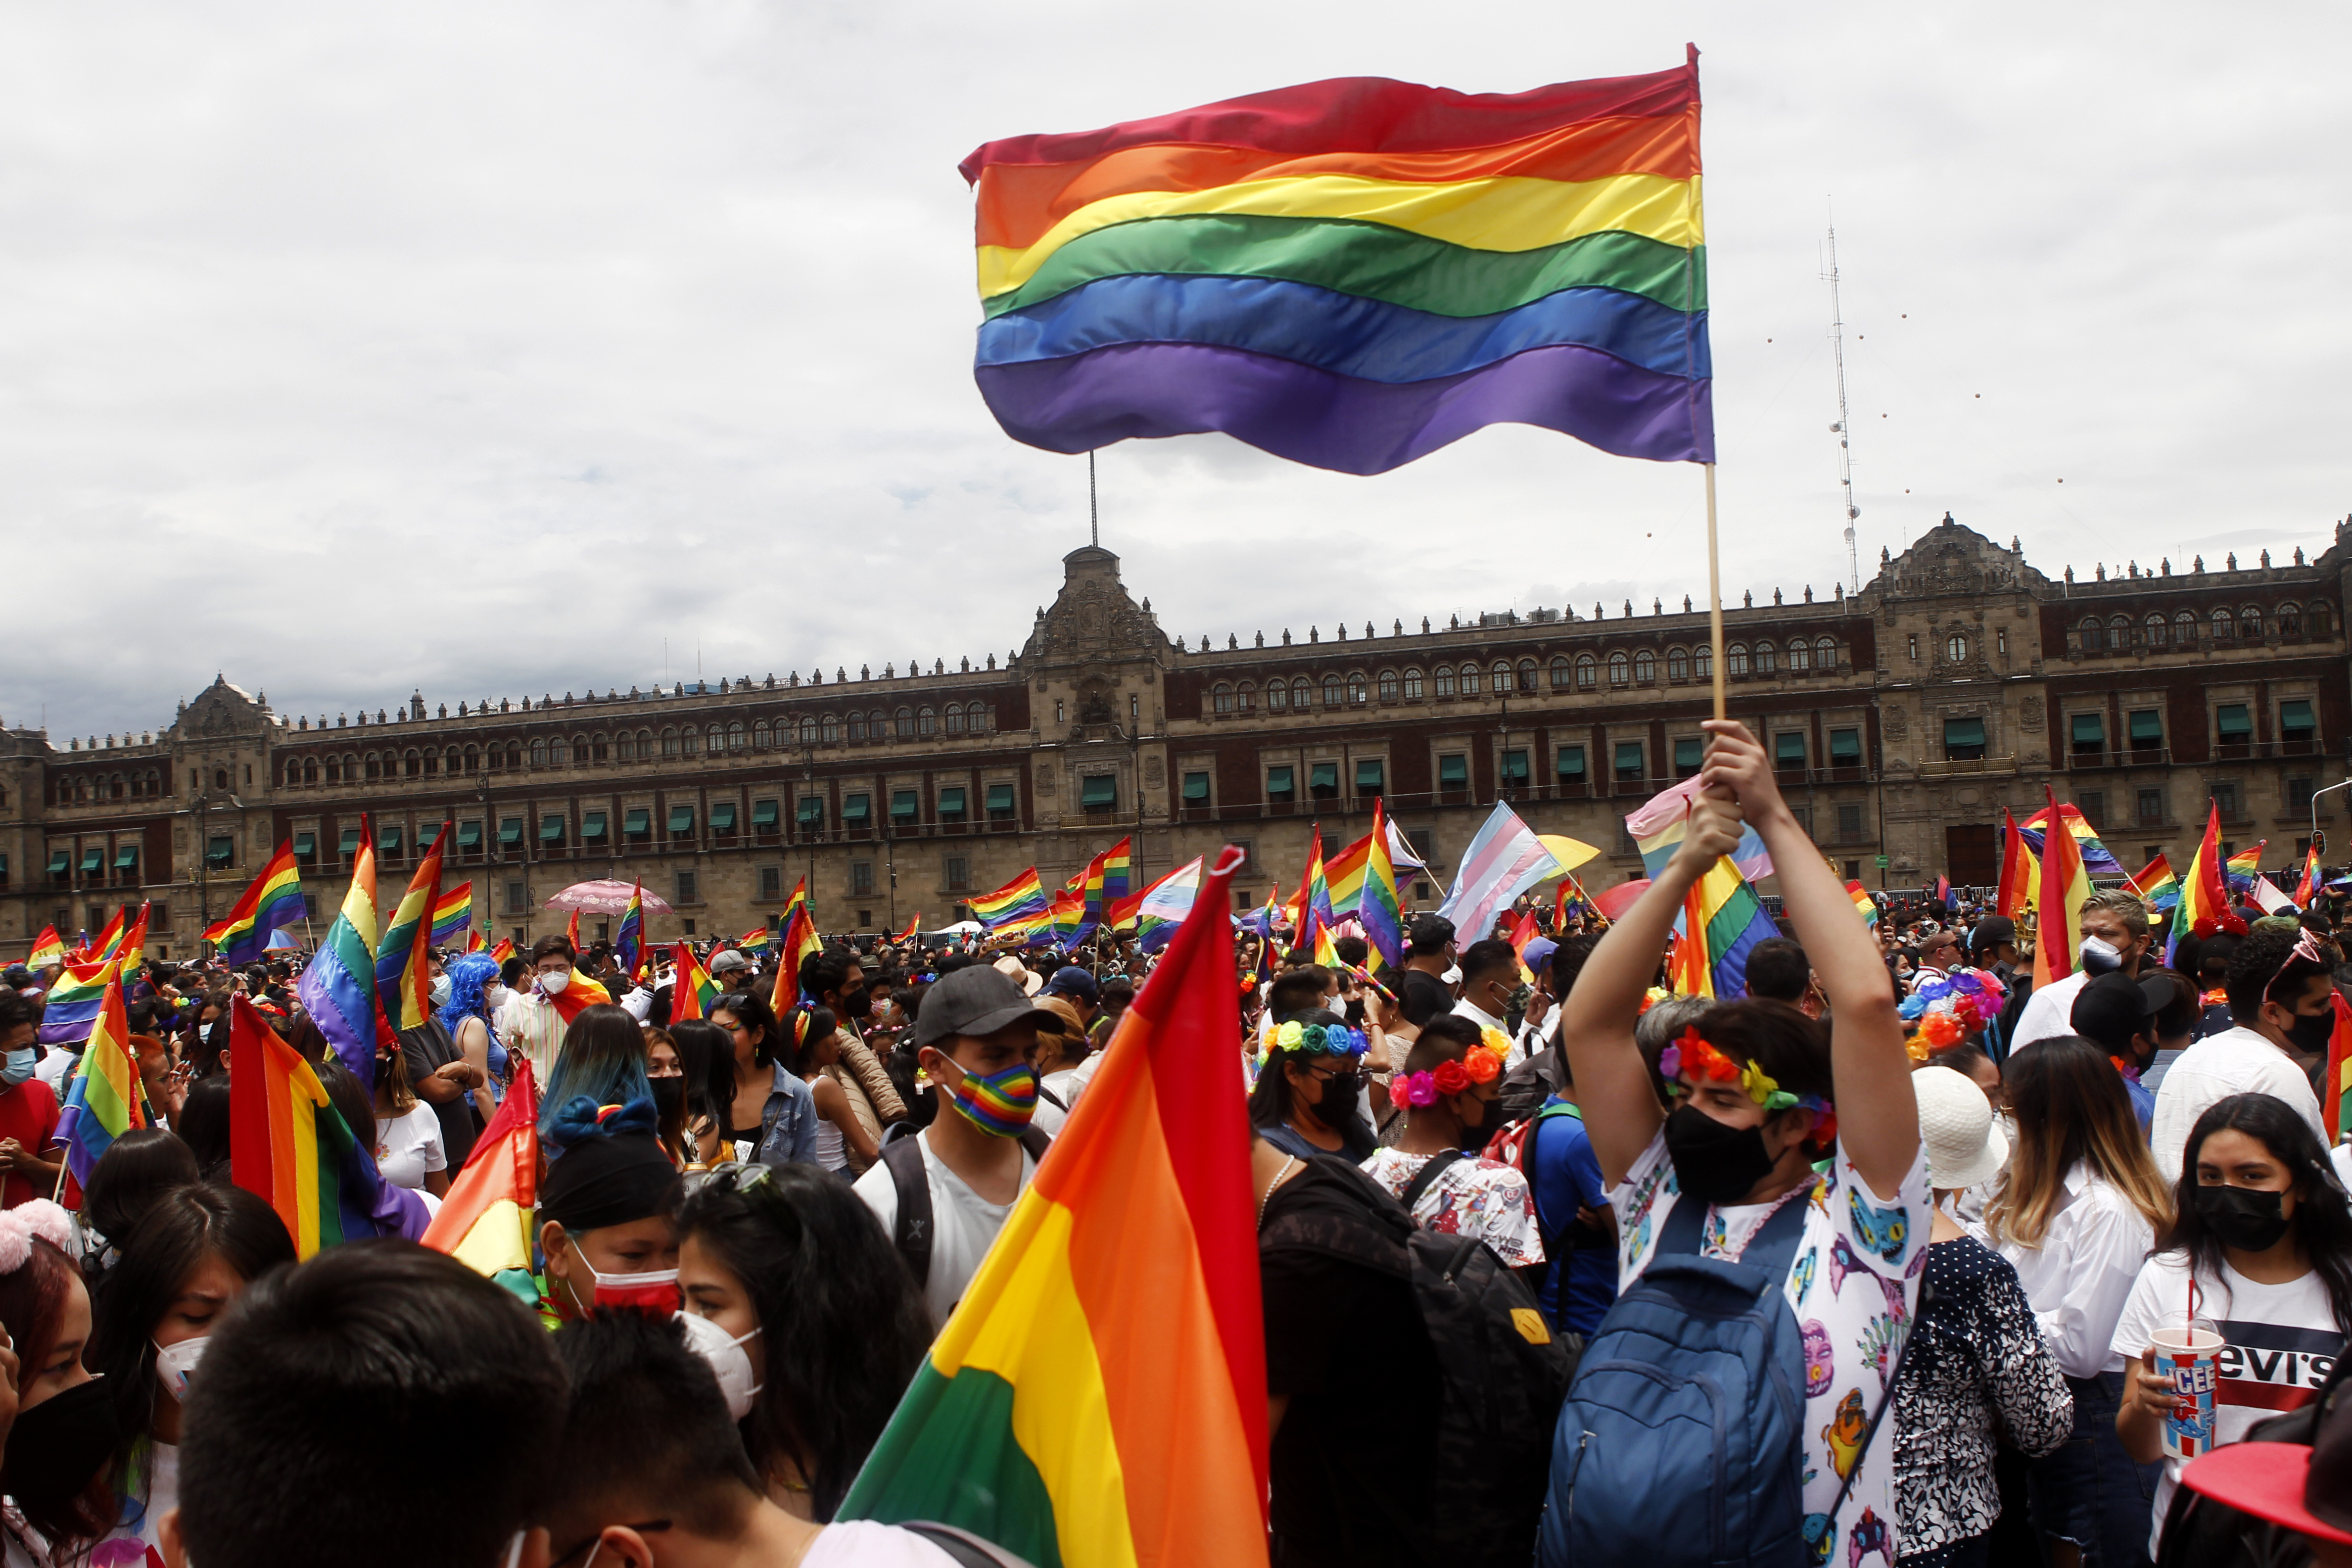 Marcha del Orgullo LGBTTTIQ en Ciudad de México, que tuvo como recorrido del Ángel de la Independencia al Zócalo capitalino. Junio 26, 2021.Foto: Karina Herández / Infobae